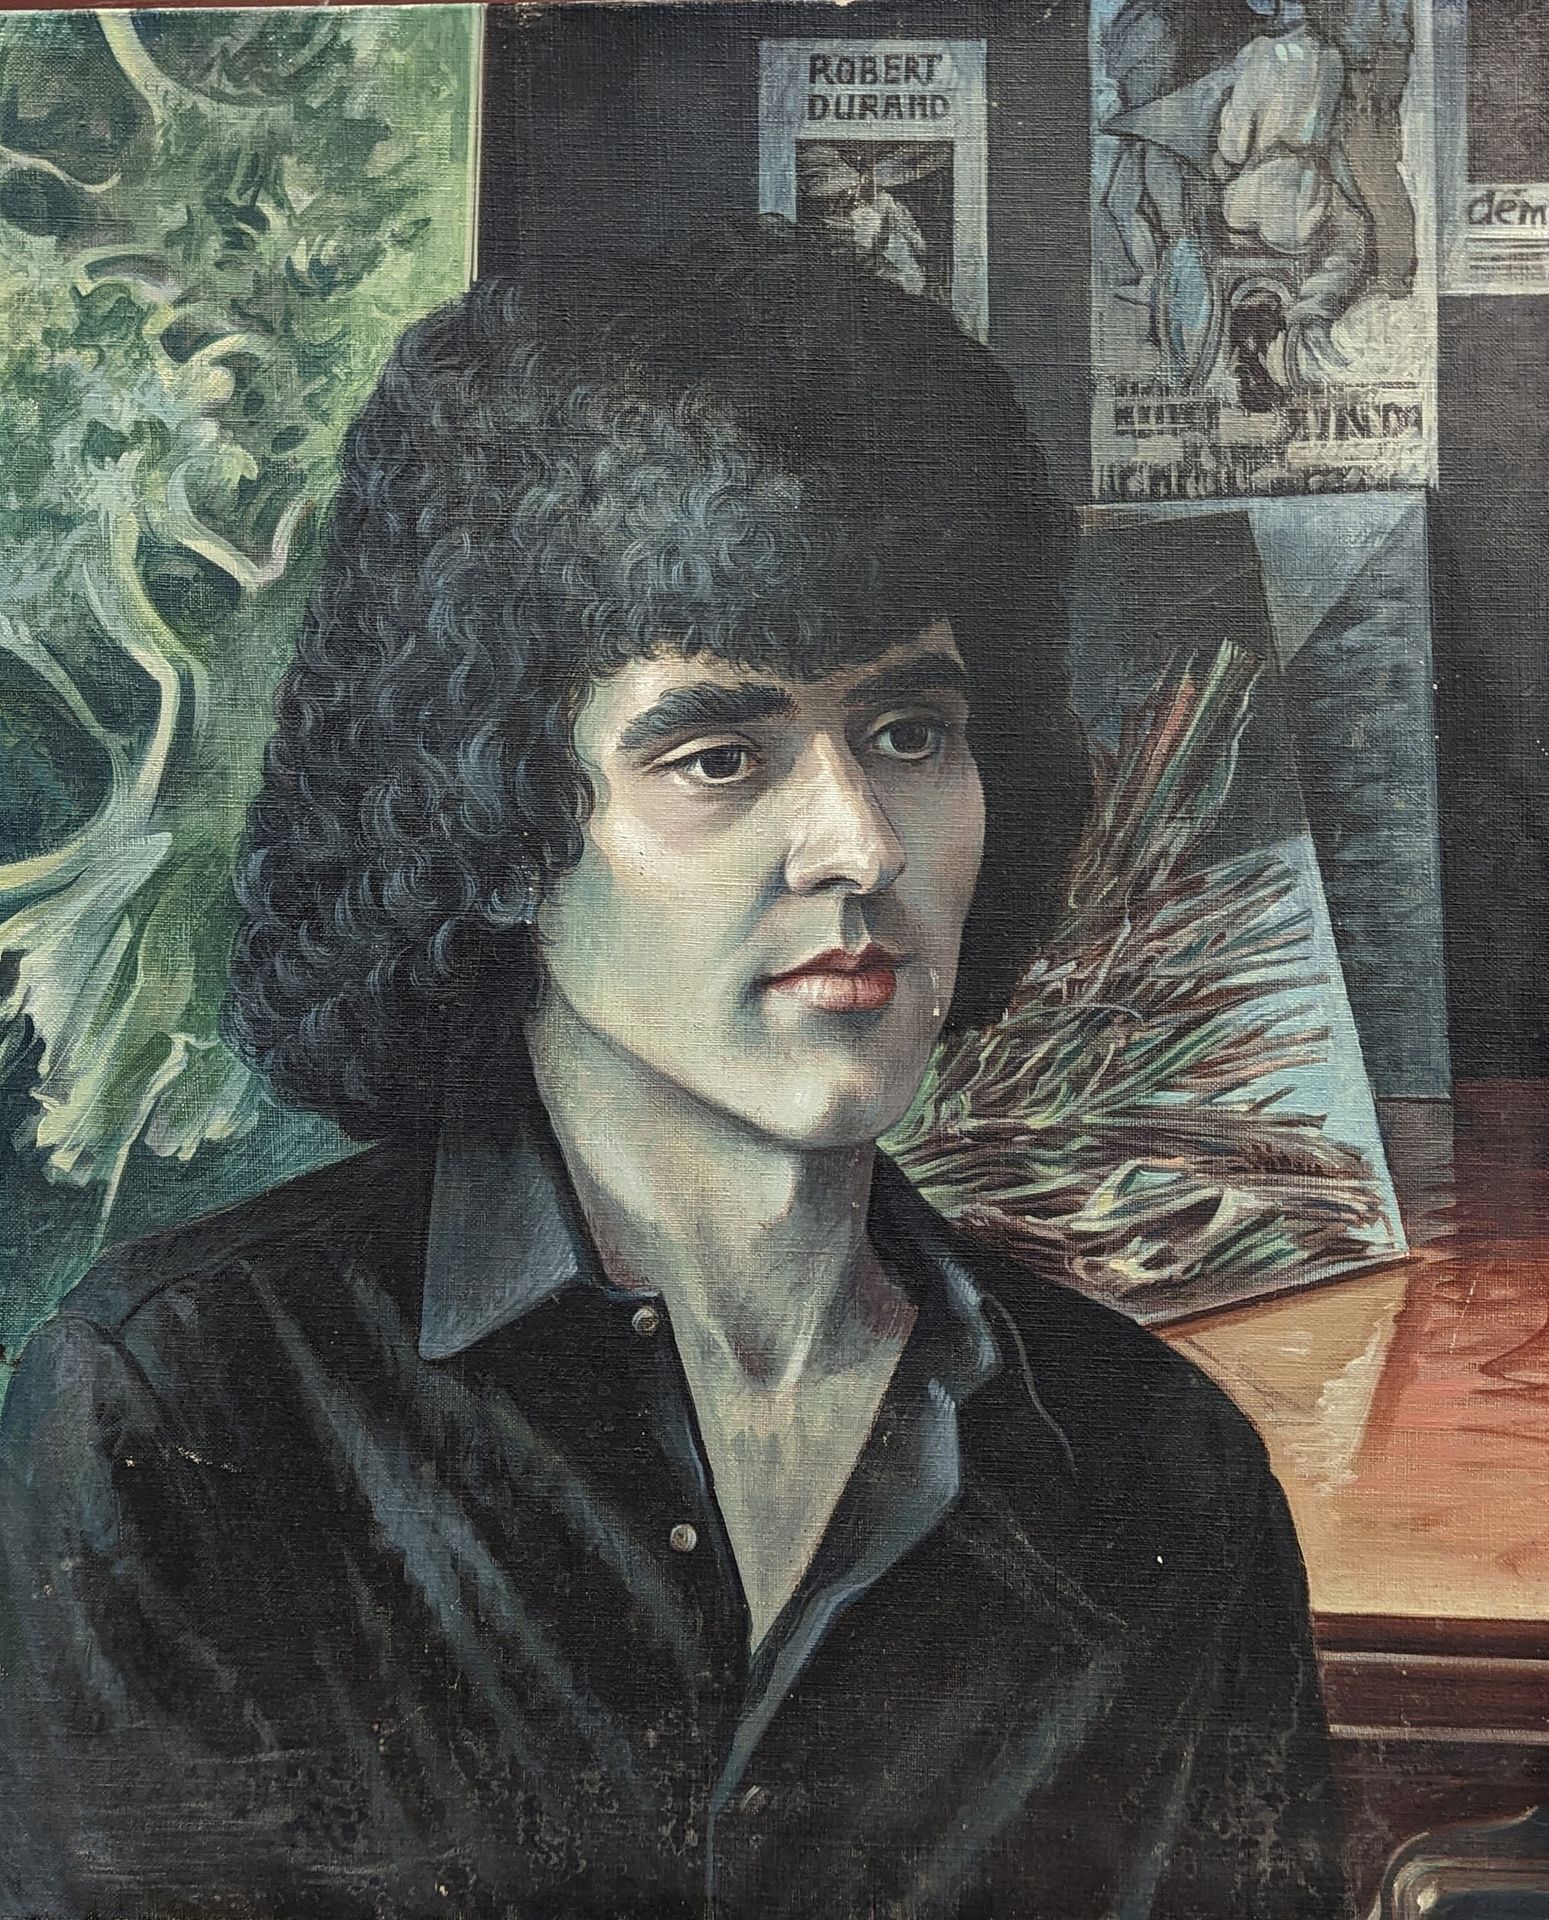 Null René MUNCH（1937年），归属。罗伯特-杜兰的画像。布面油画，55 x 46厘米。